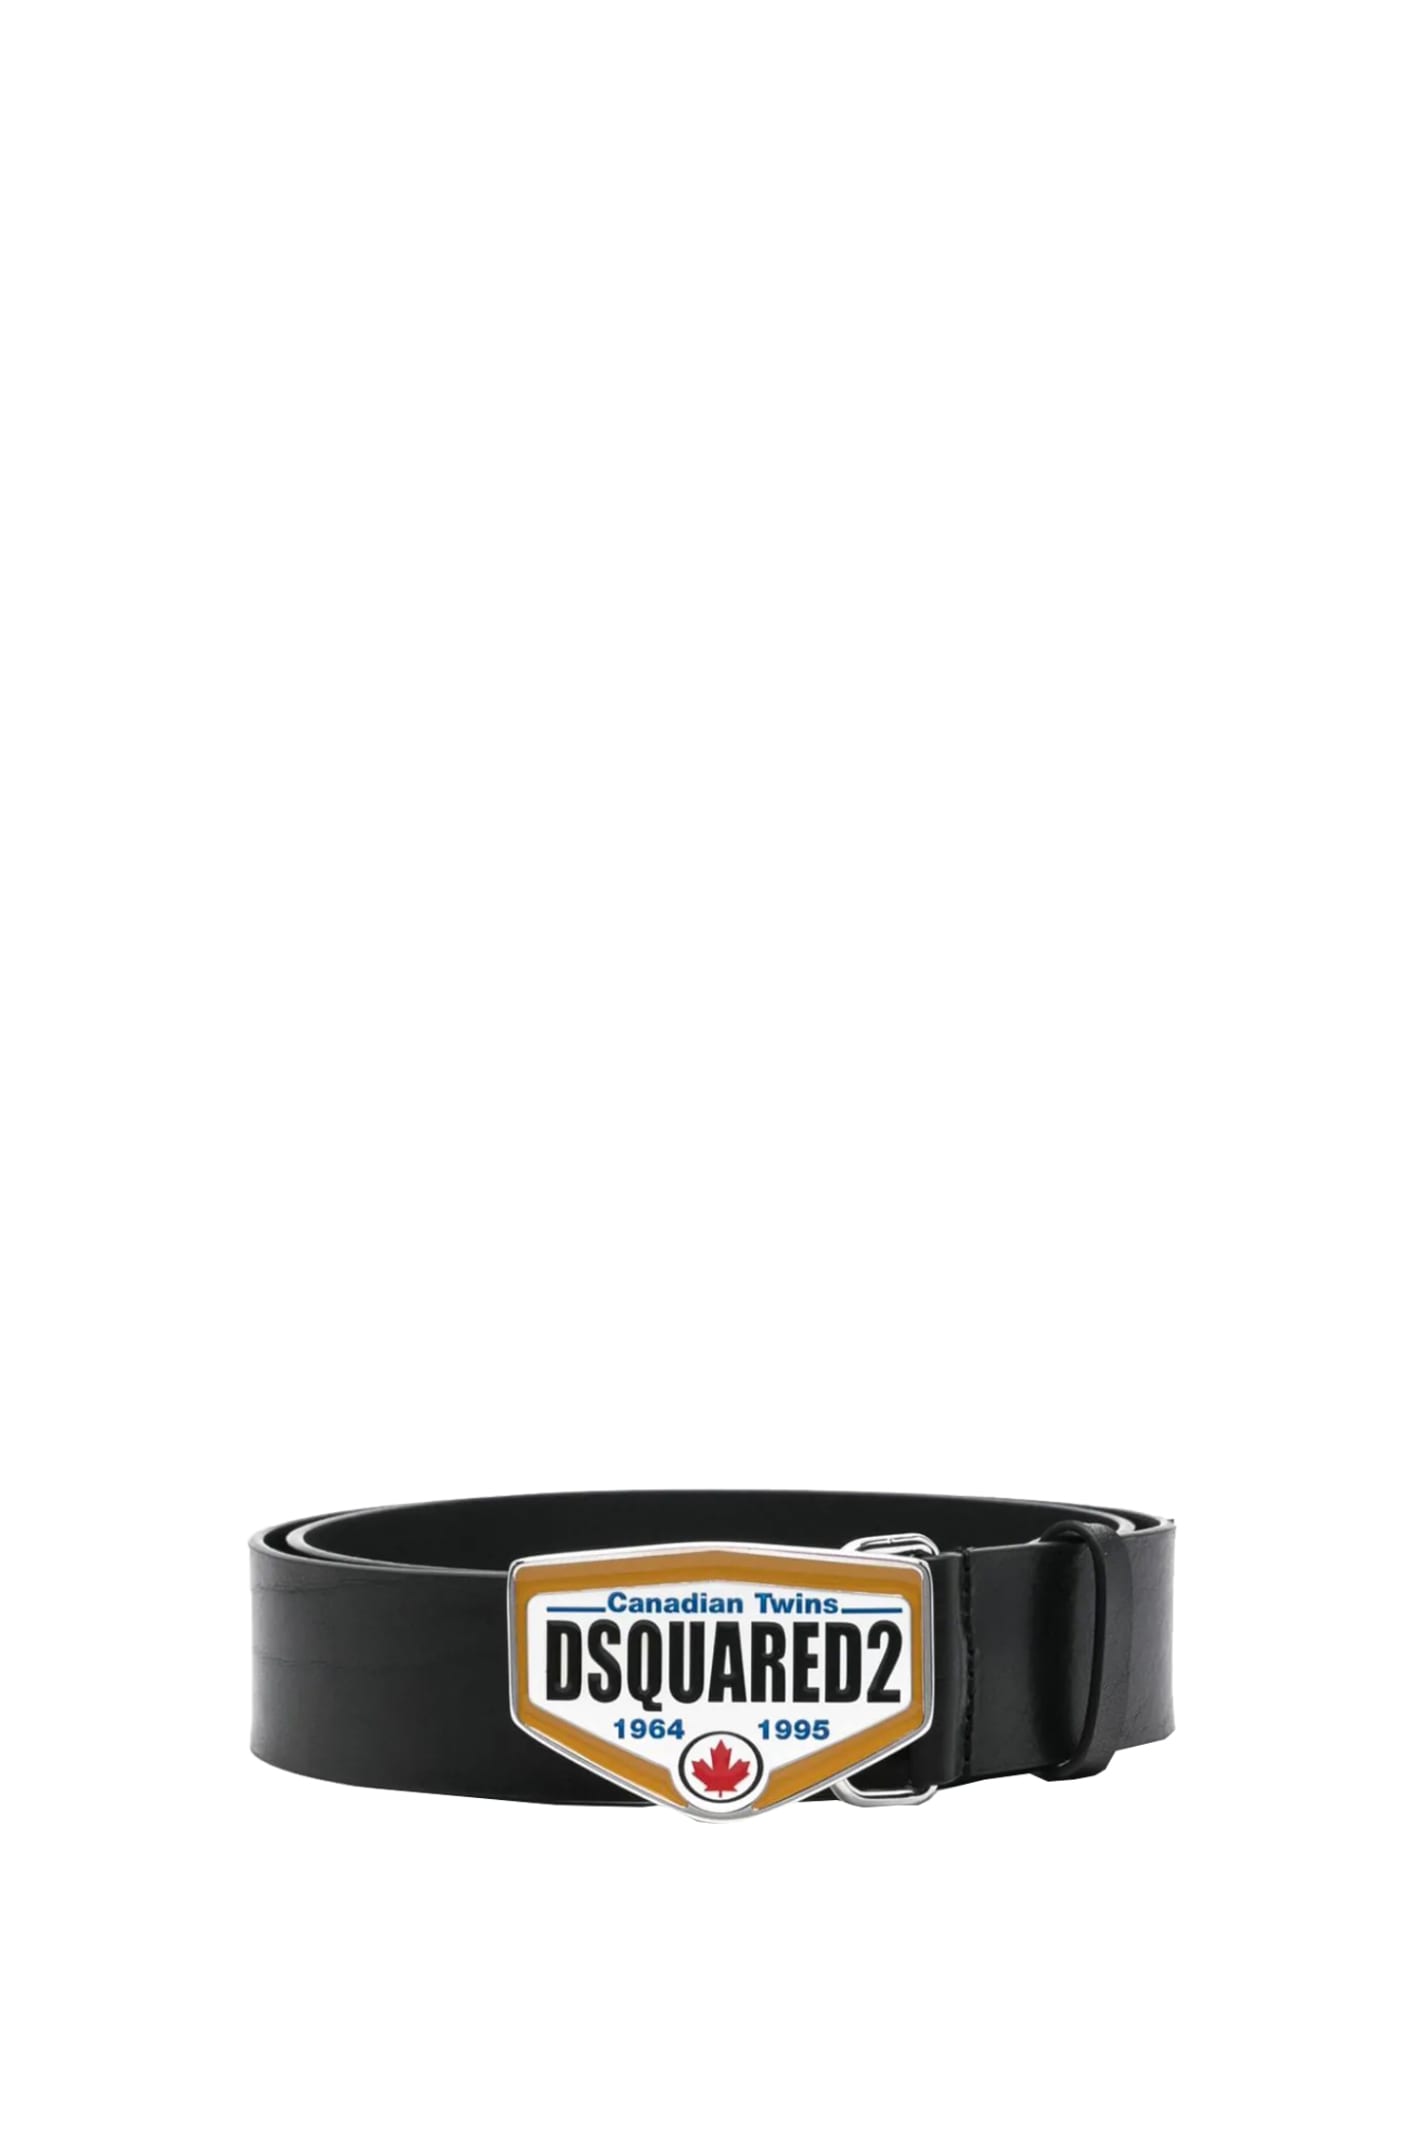 Dsquared2 Belt